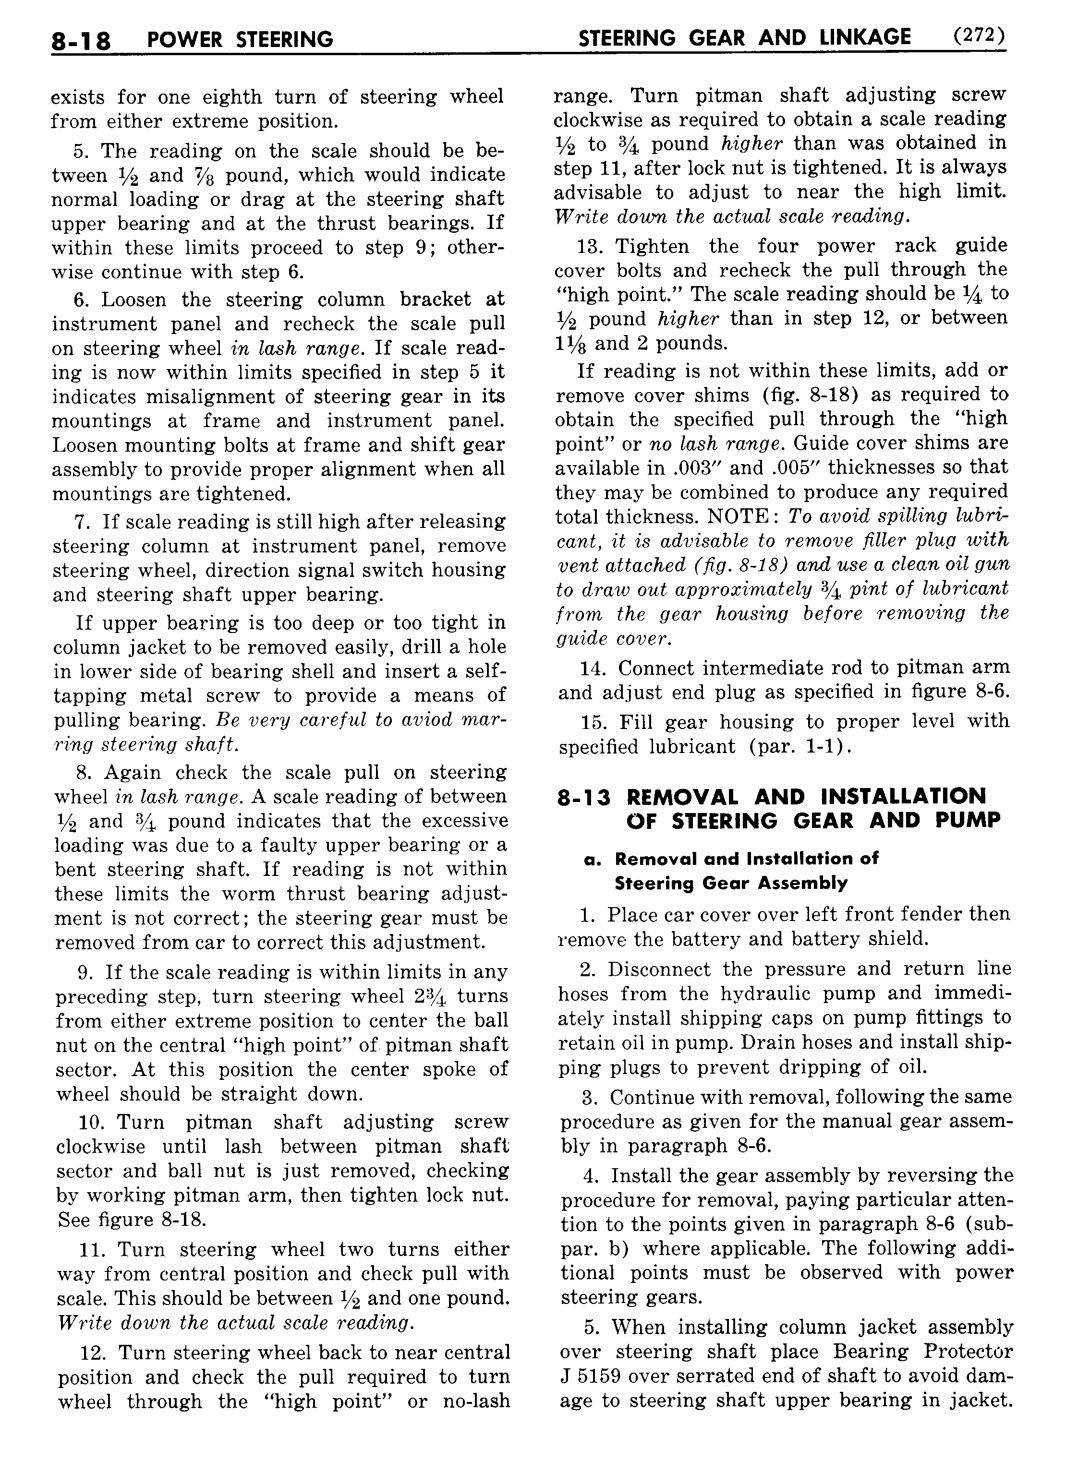 n_09 1954 Buick Shop Manual - Steering-018-018.jpg